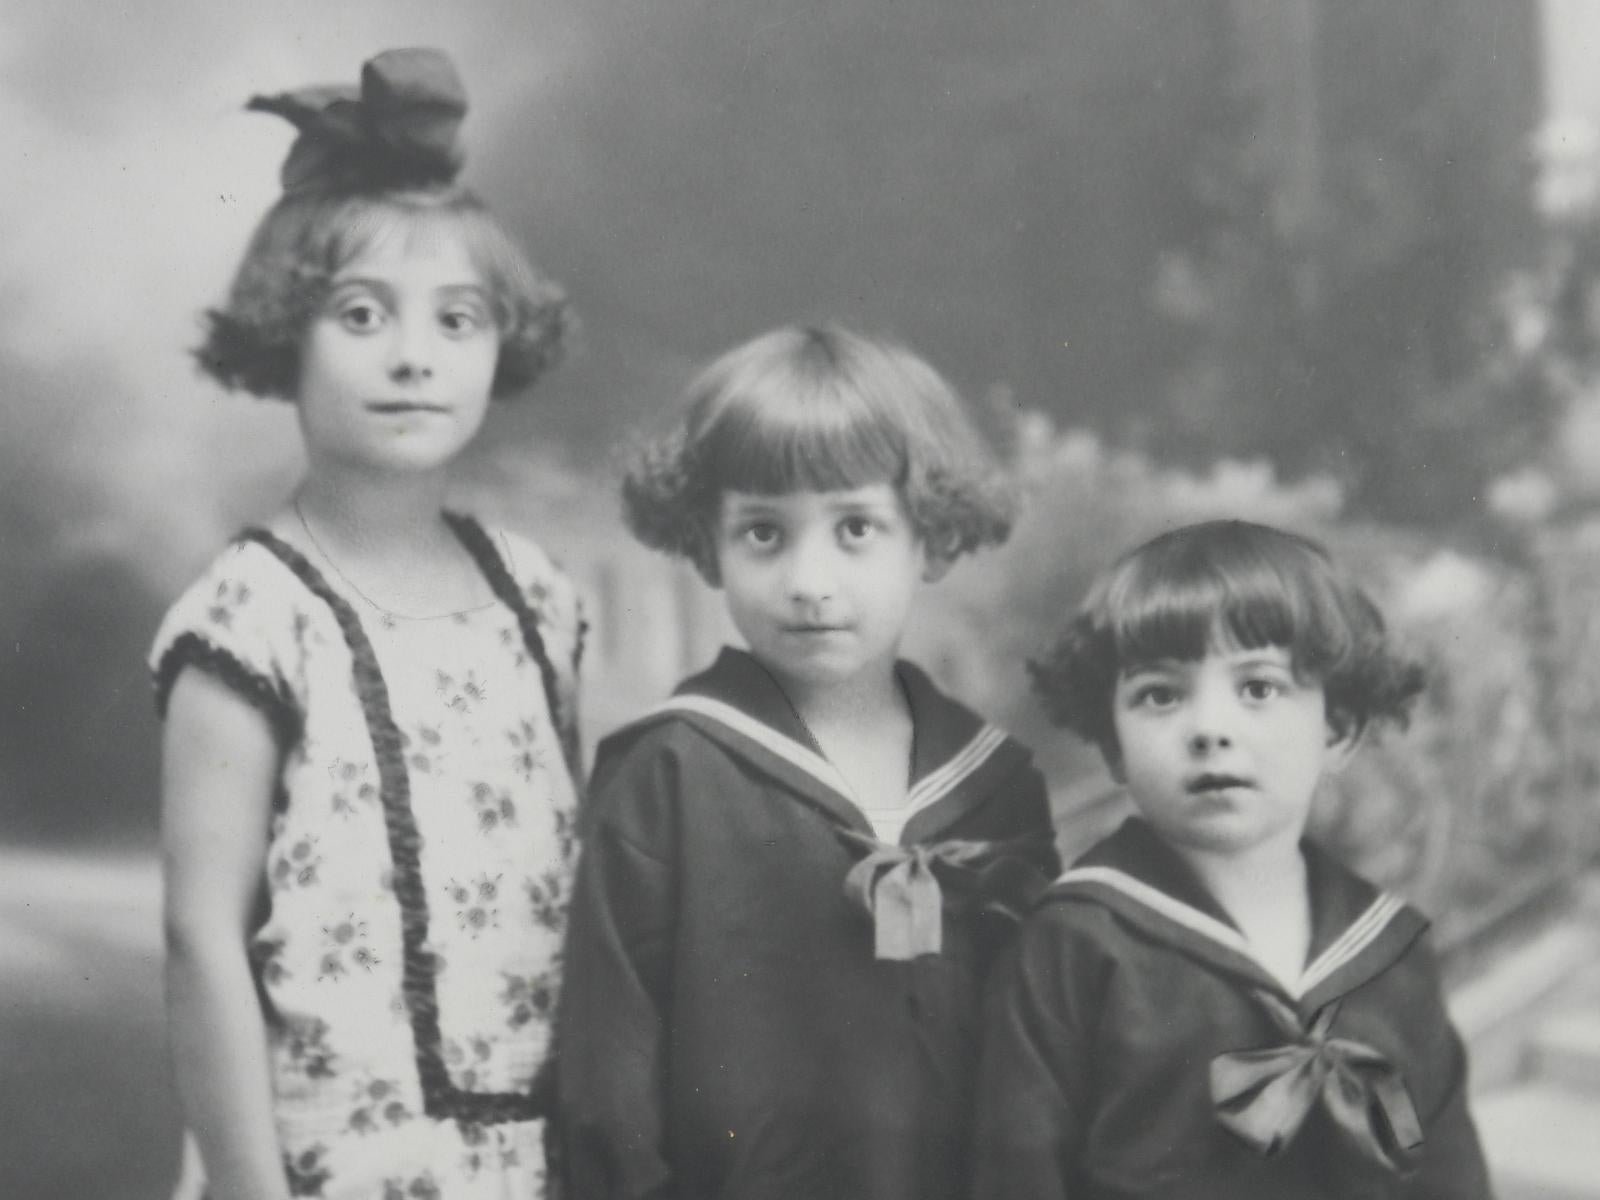 1920's children's hairstyles